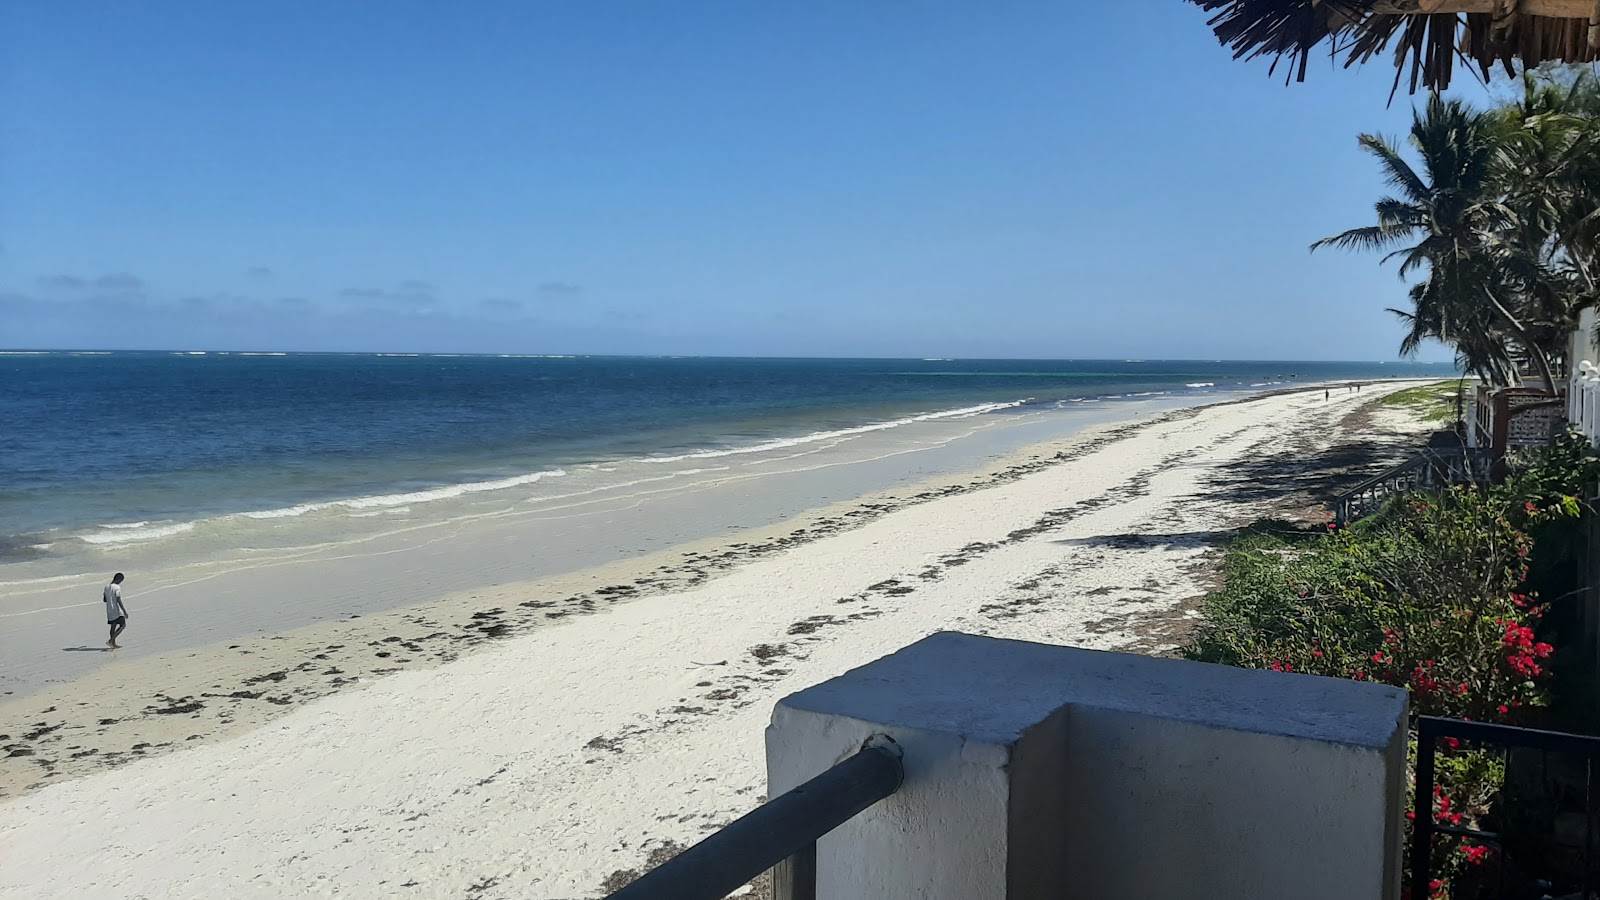 Fotografie cu Nyali Beach - locul popular printre cunoscătorii de relaxare